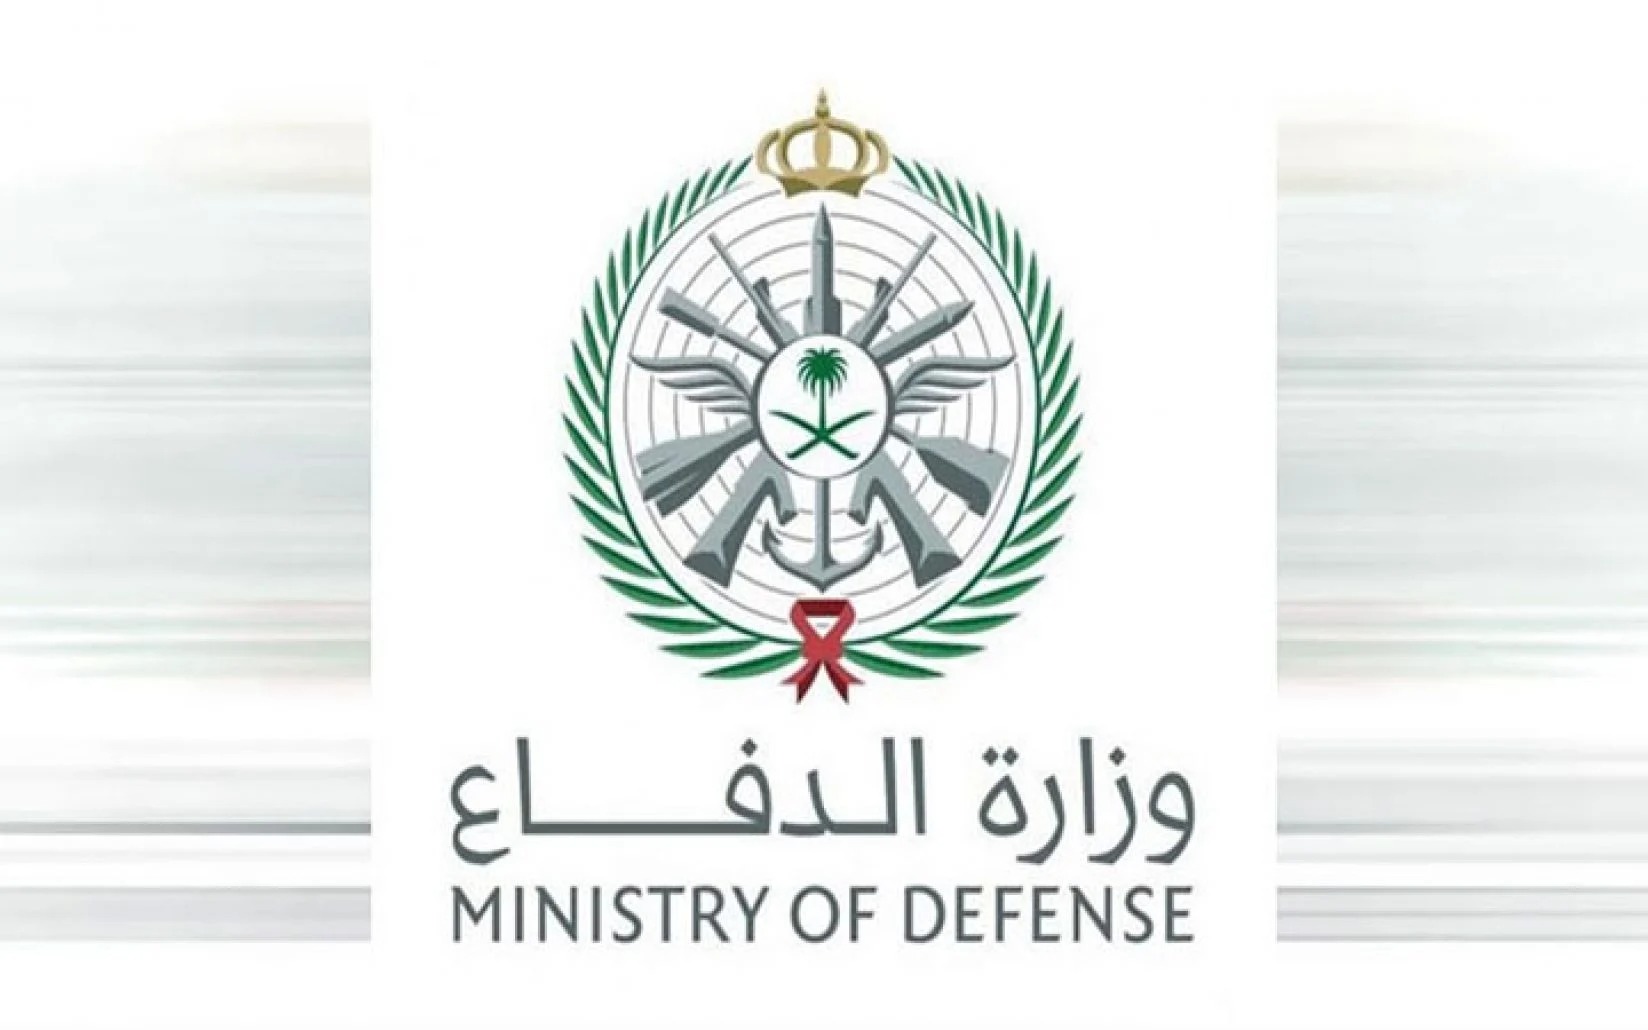 وزارة الدفاع استعلام عن طلب إلكترونيًا بالخطوات